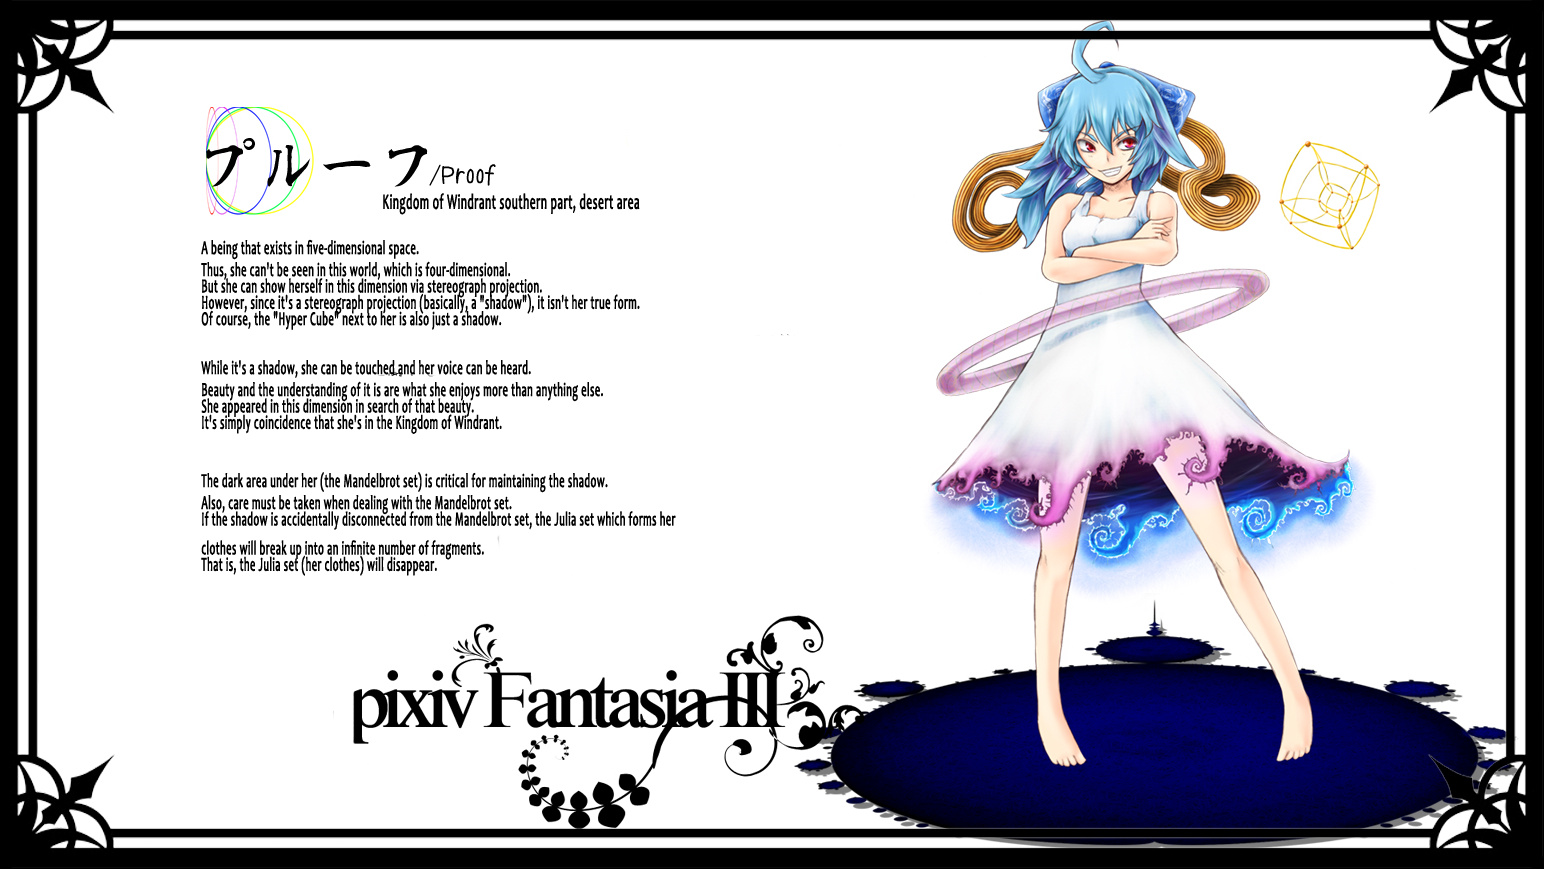 Anime Pixiv Fantasia Iii 1544x869